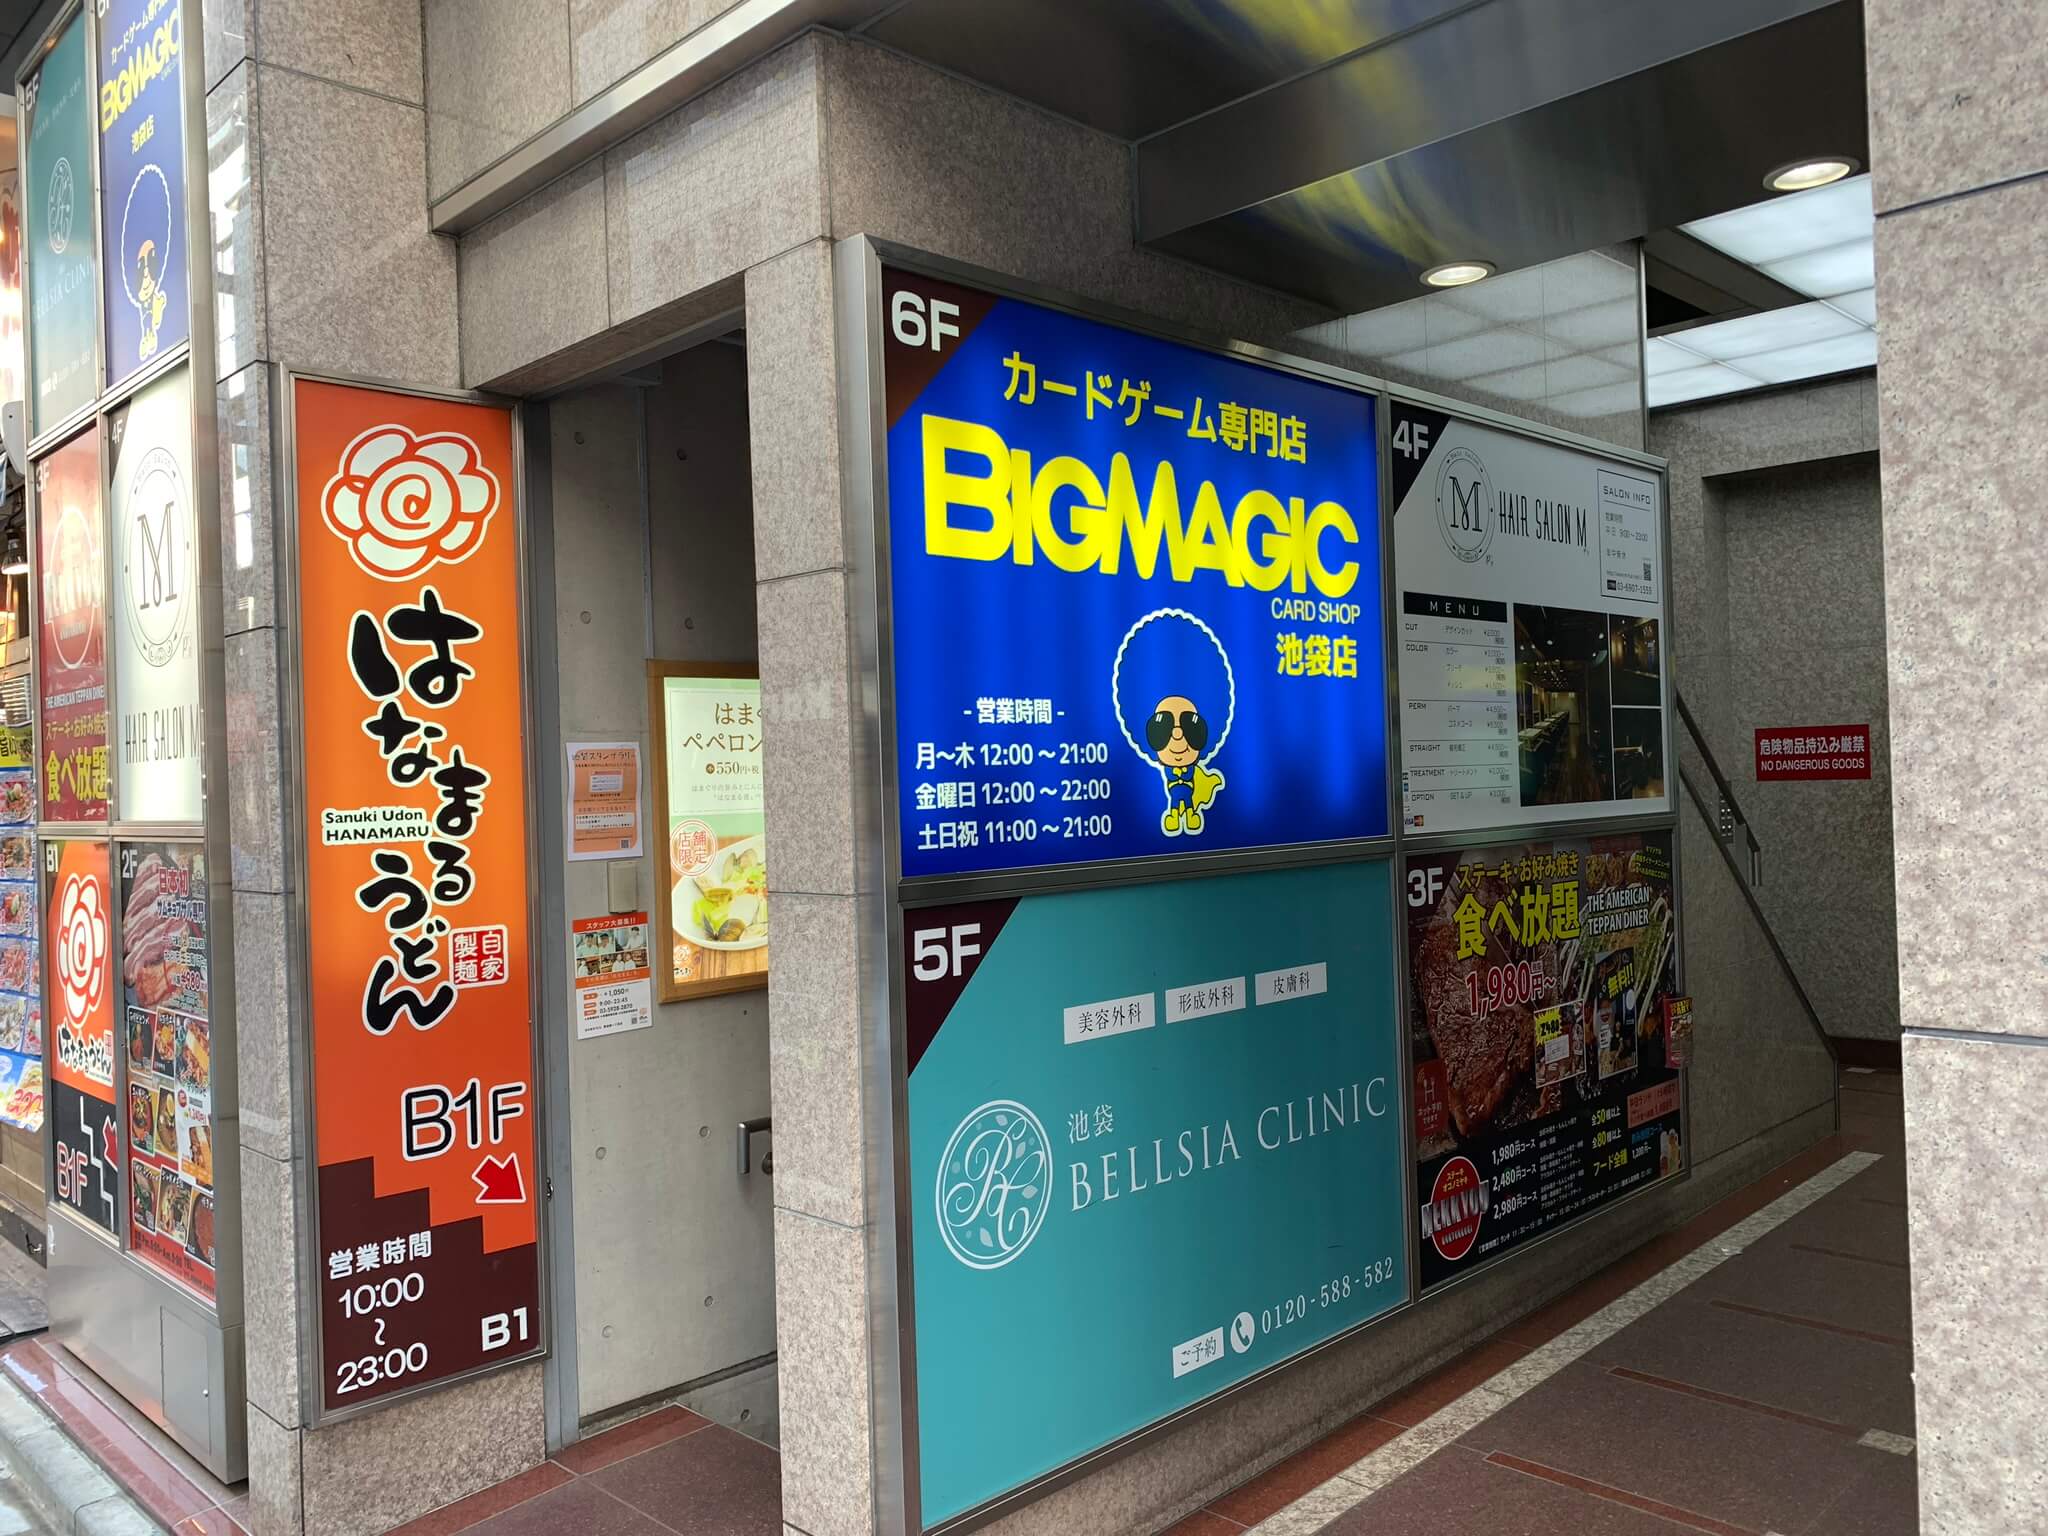 【MTG】BIG MAGIC池袋店の口コミ・体験レビュー【優良】